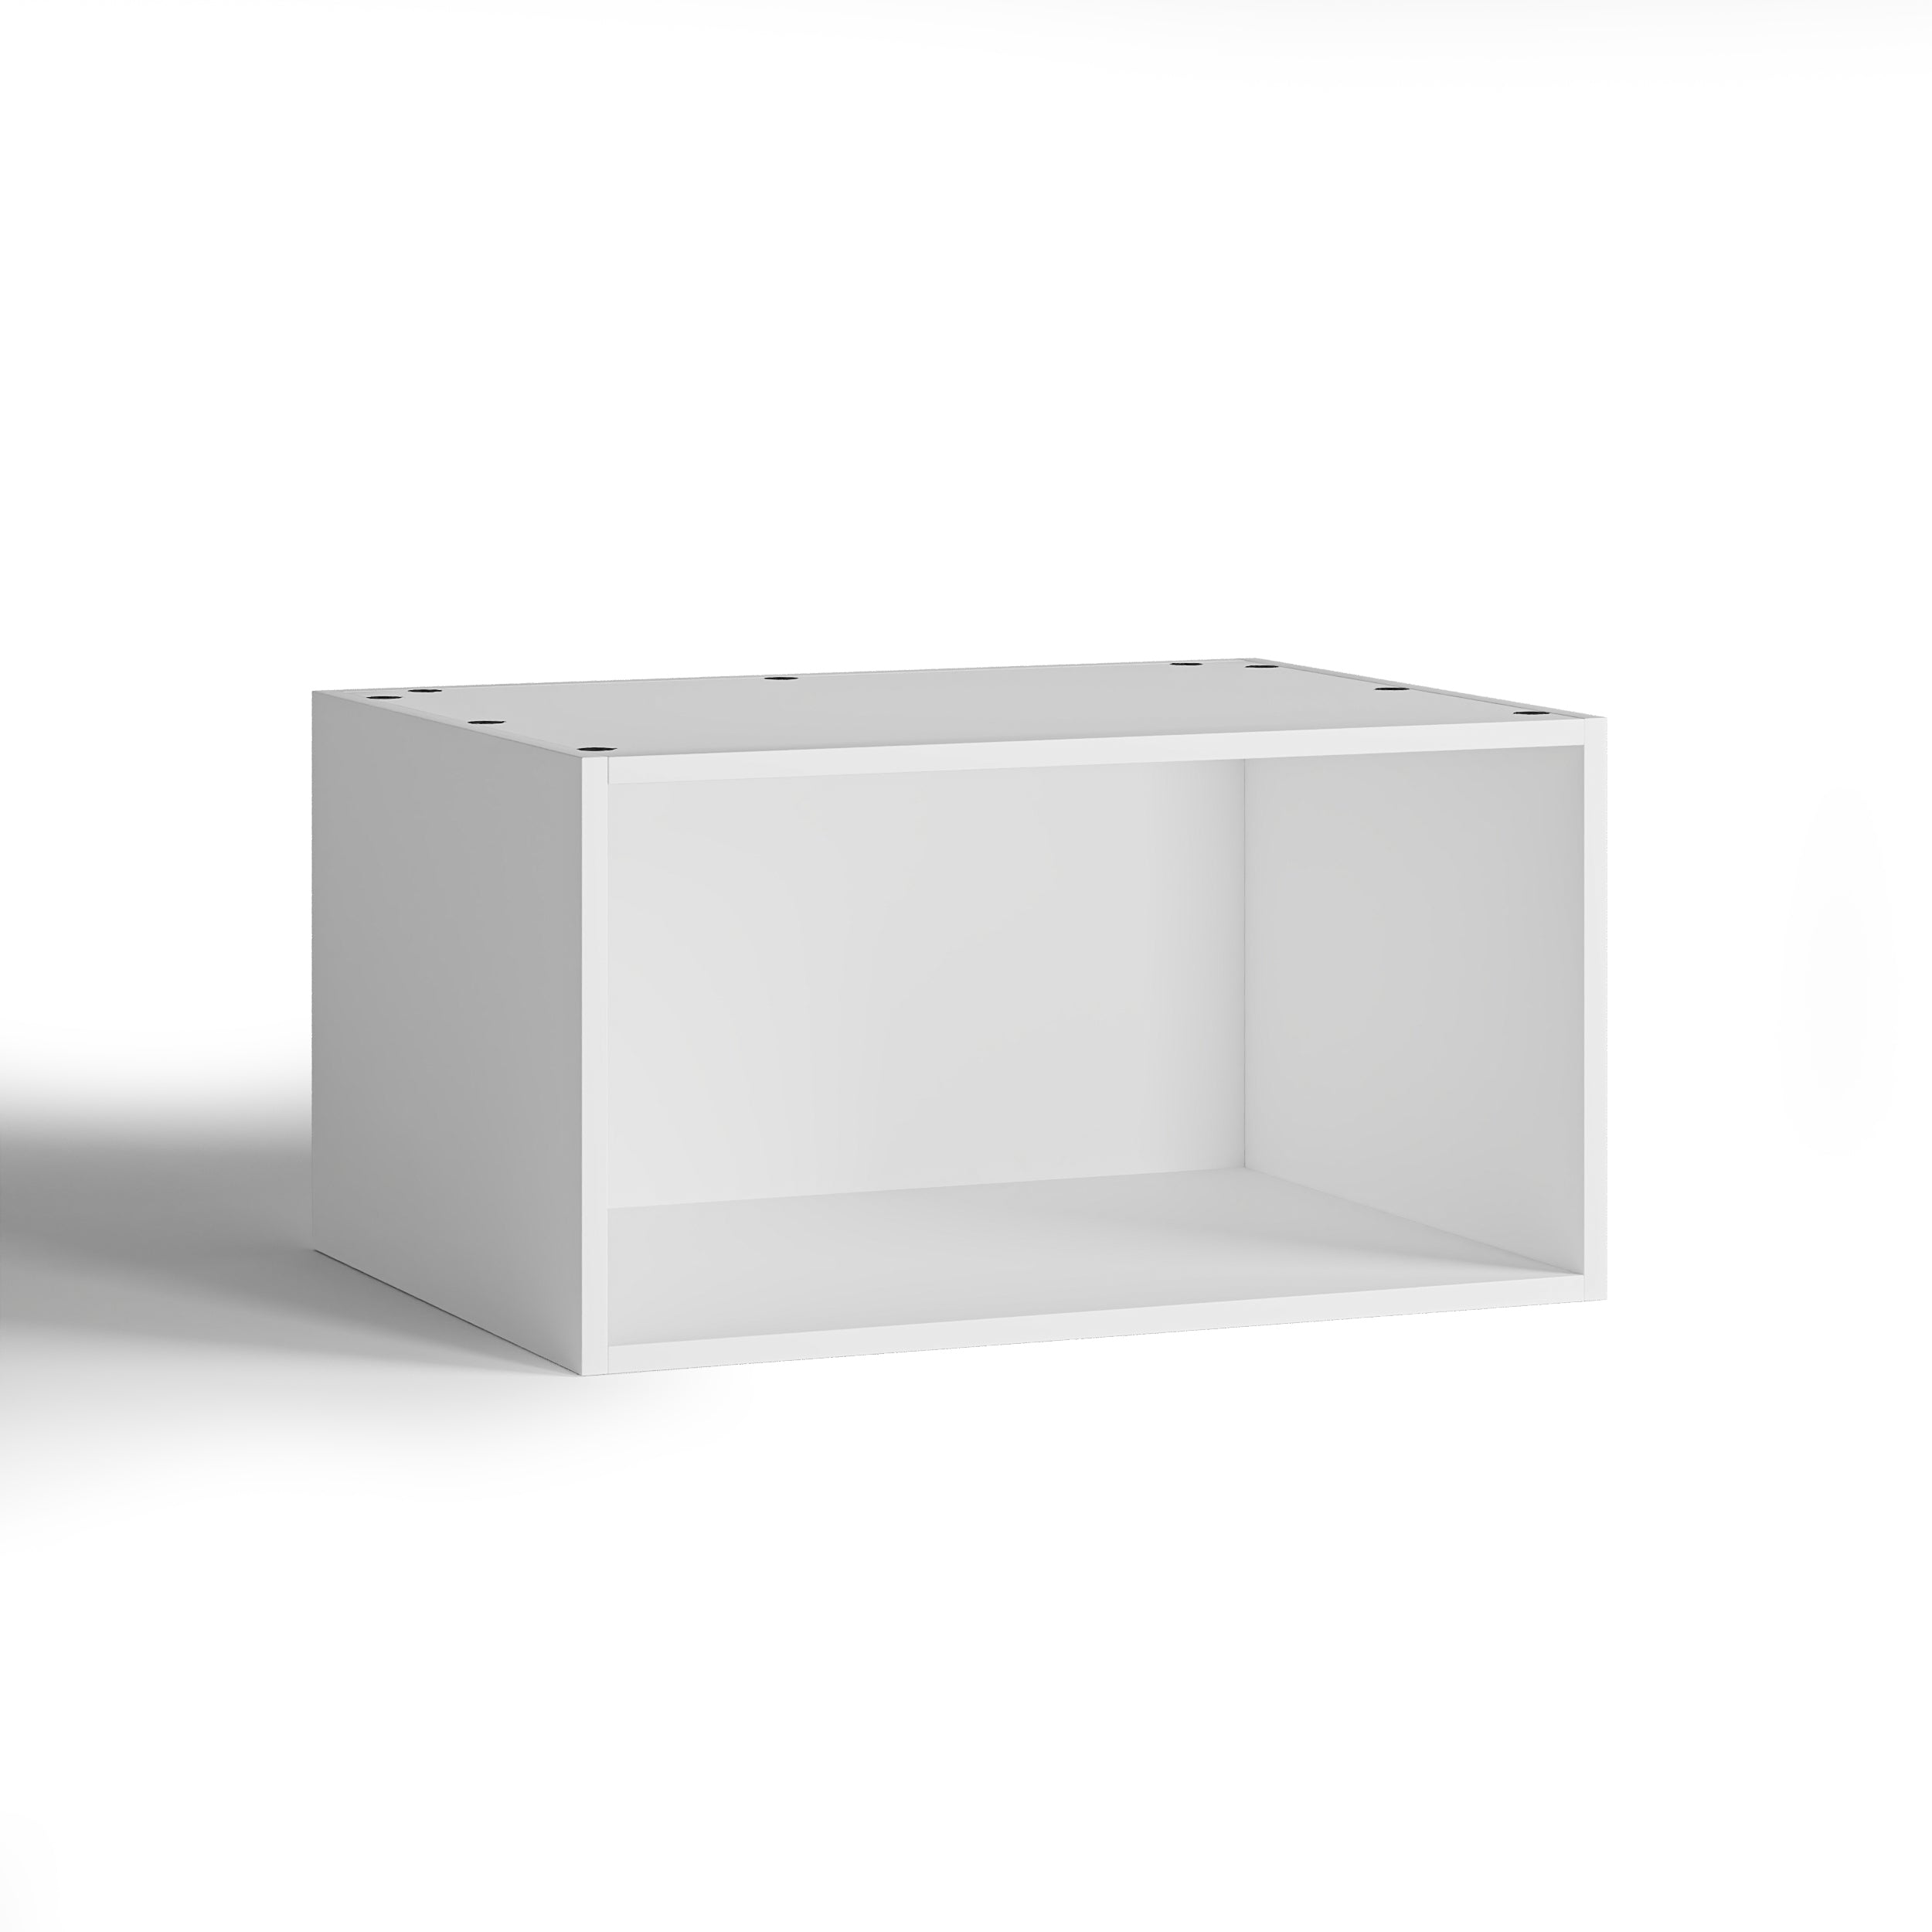 75x40 - Cabinet (58cm D) No Doors - PAX